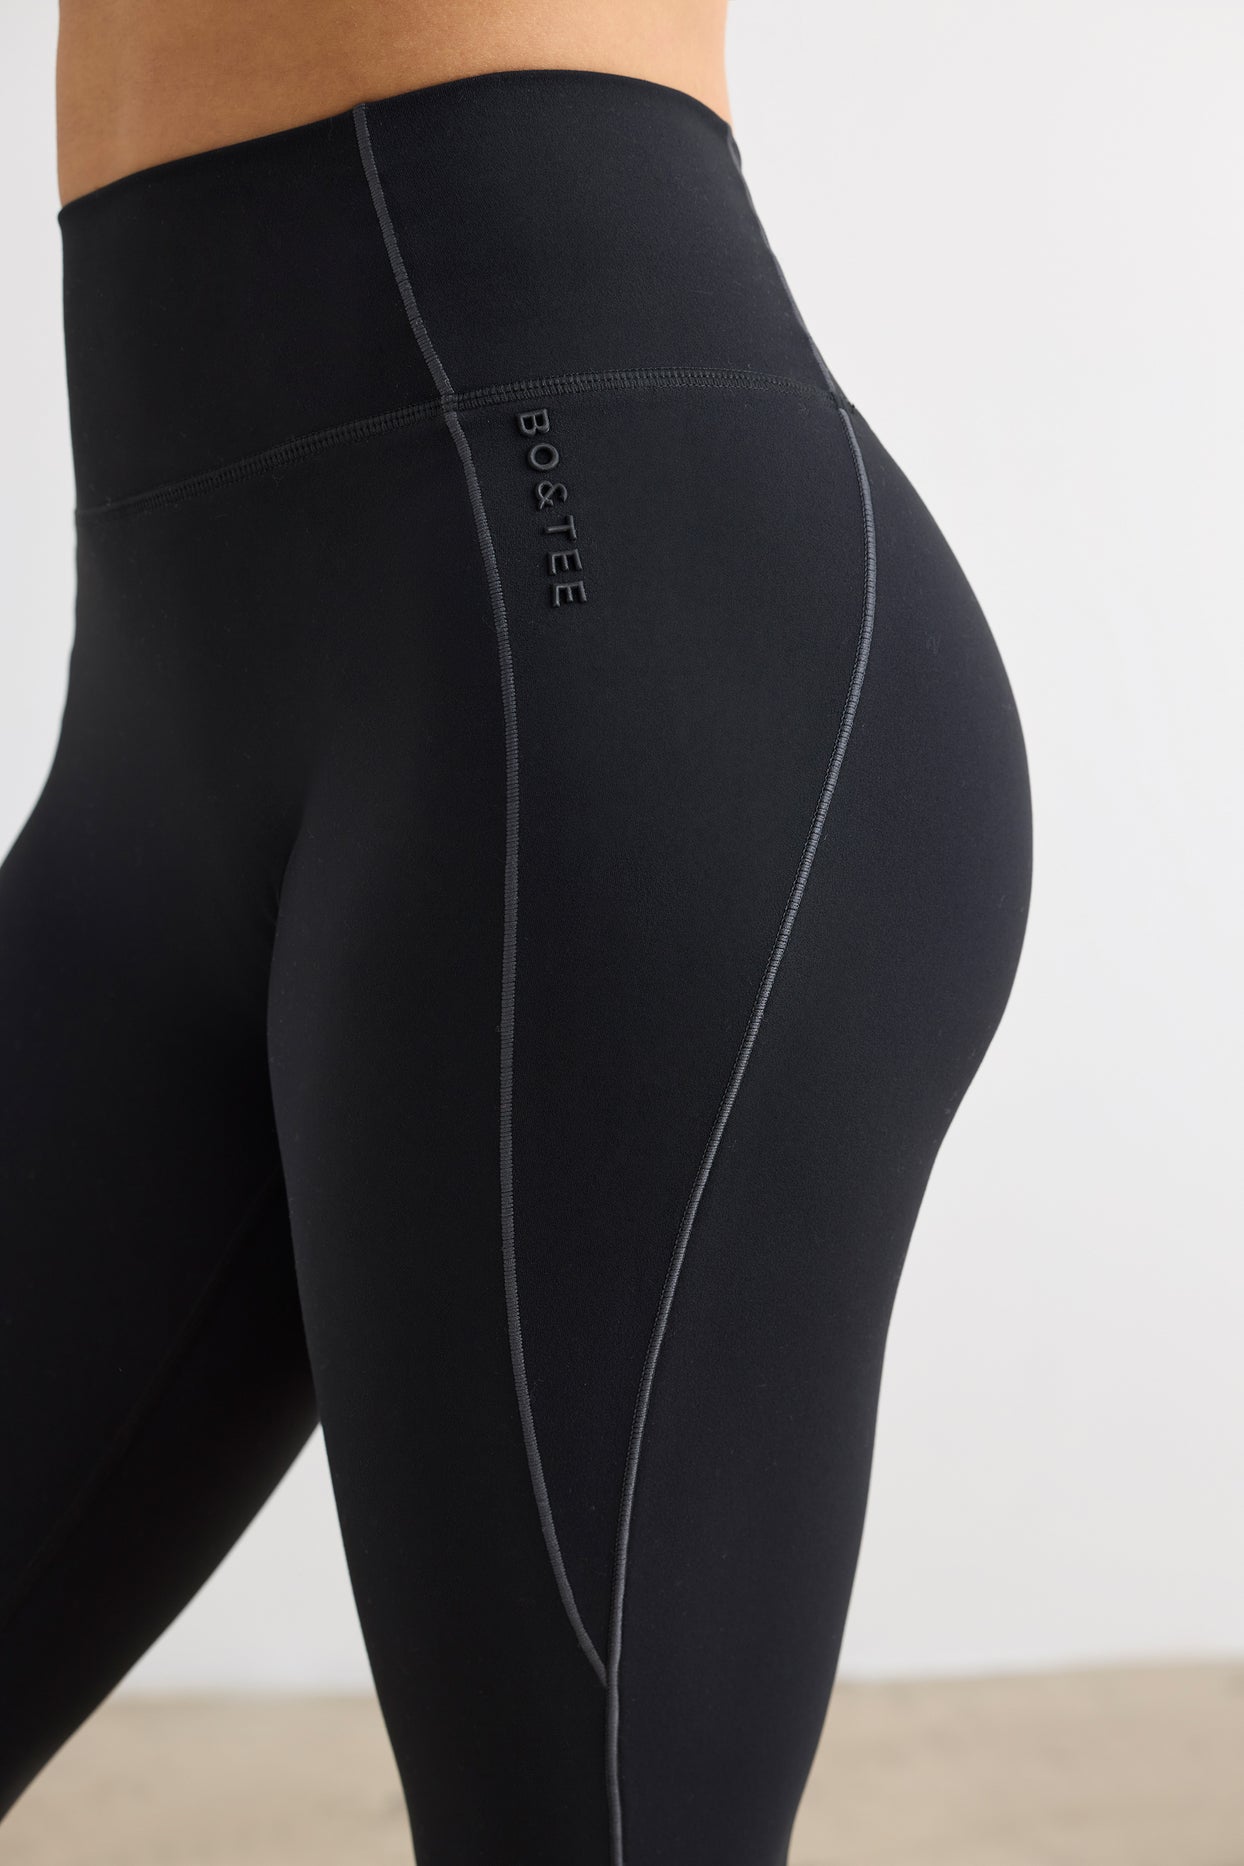 Miękkie, aktywne spodnie rozszerzane w kolorze czarnym